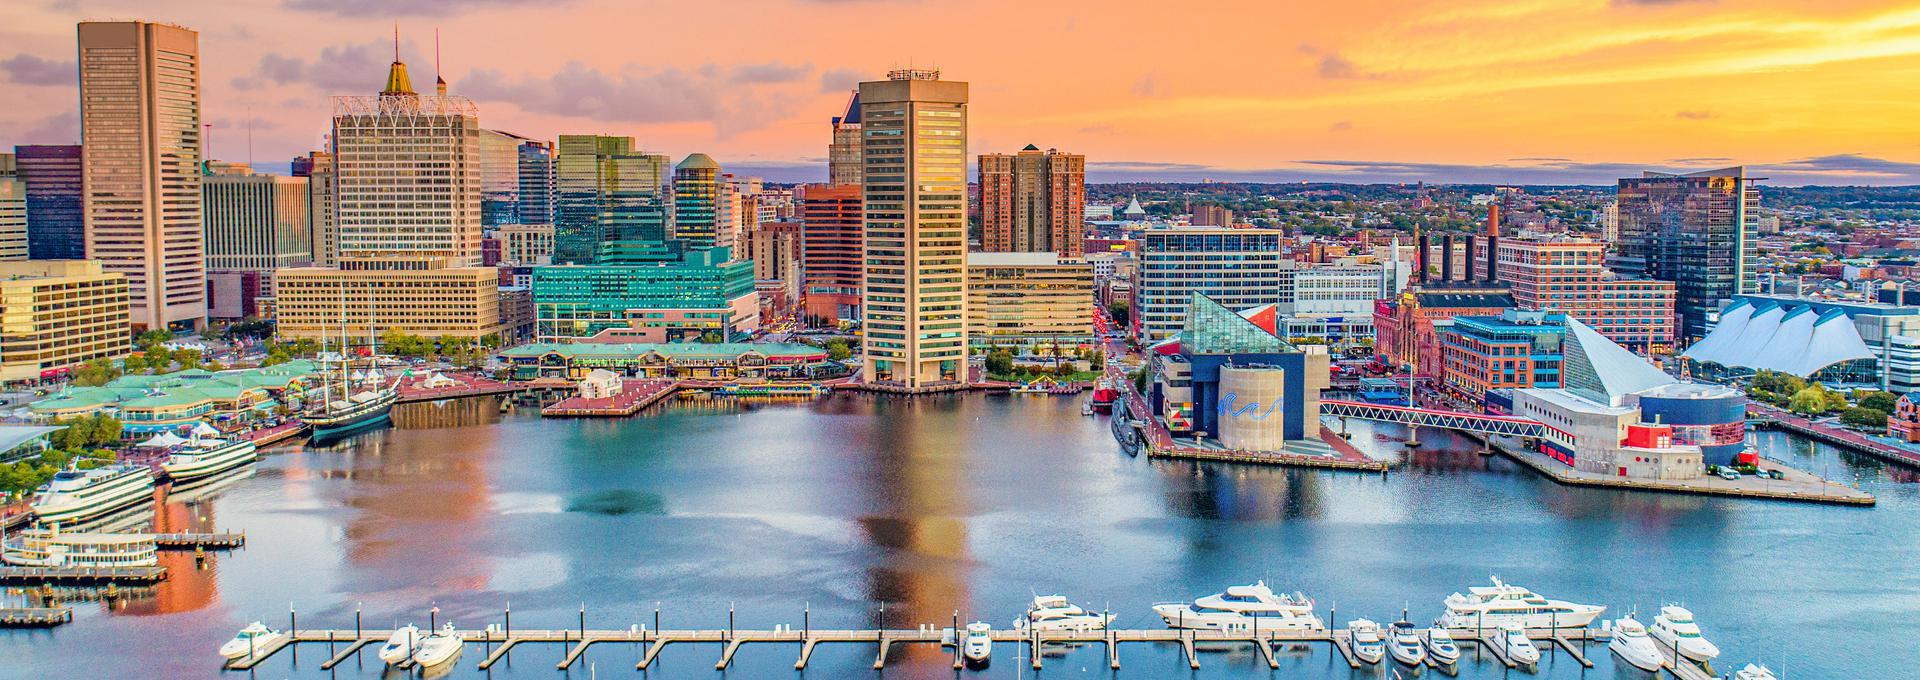 Baltimore - 